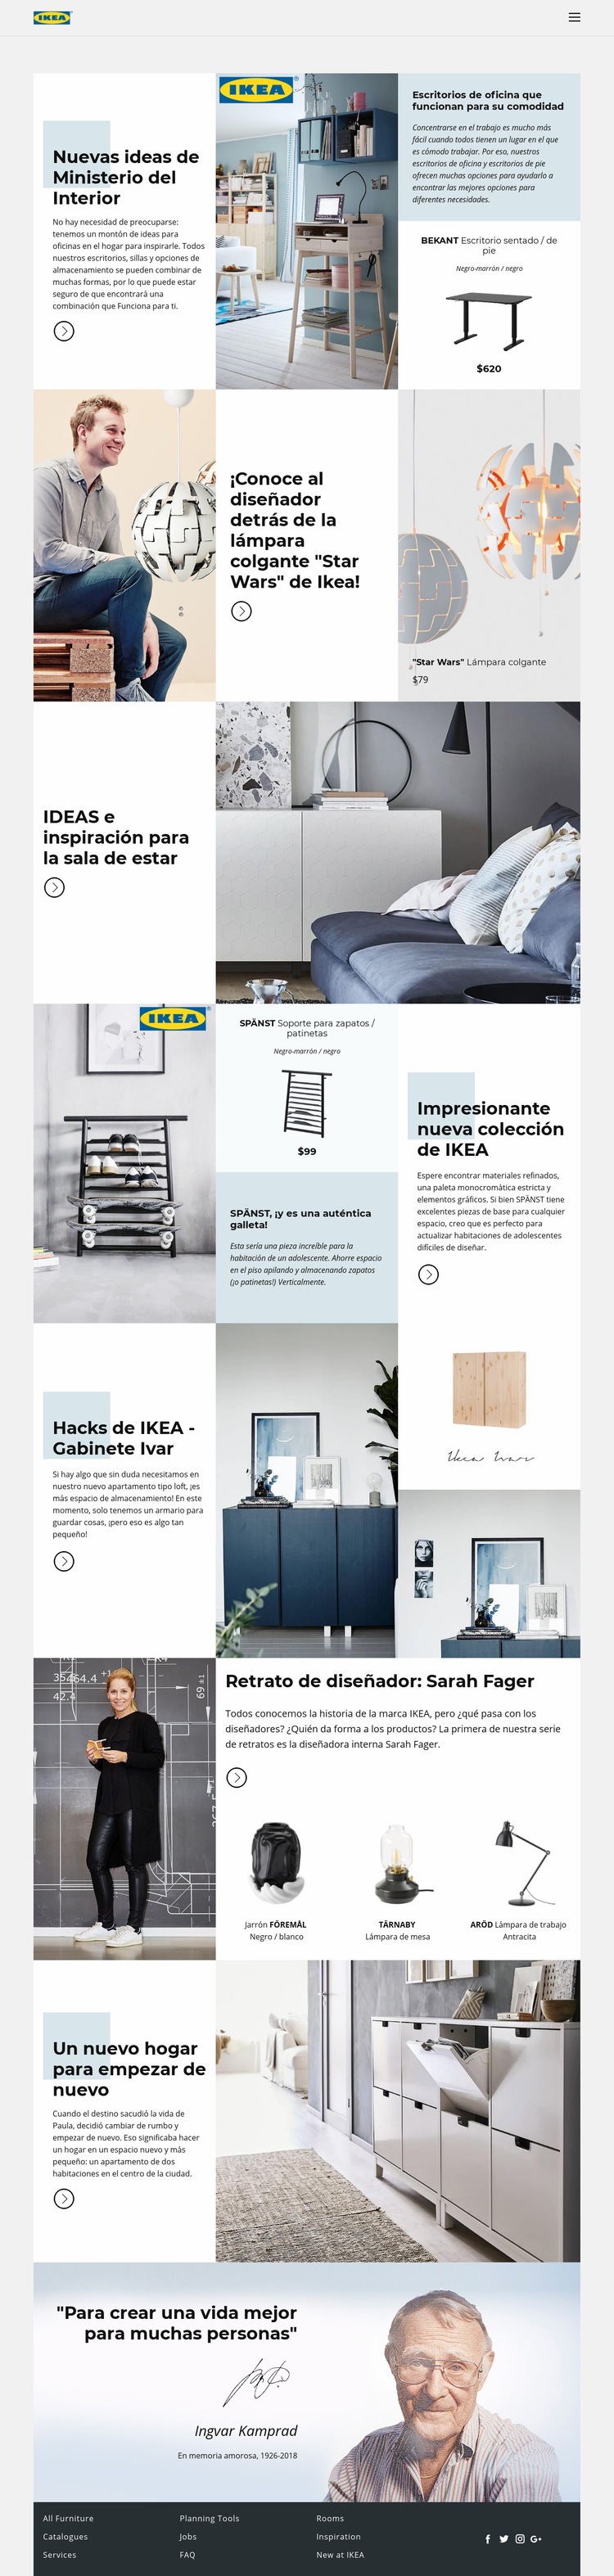 Inspiración de IKEA Plantilla de una página